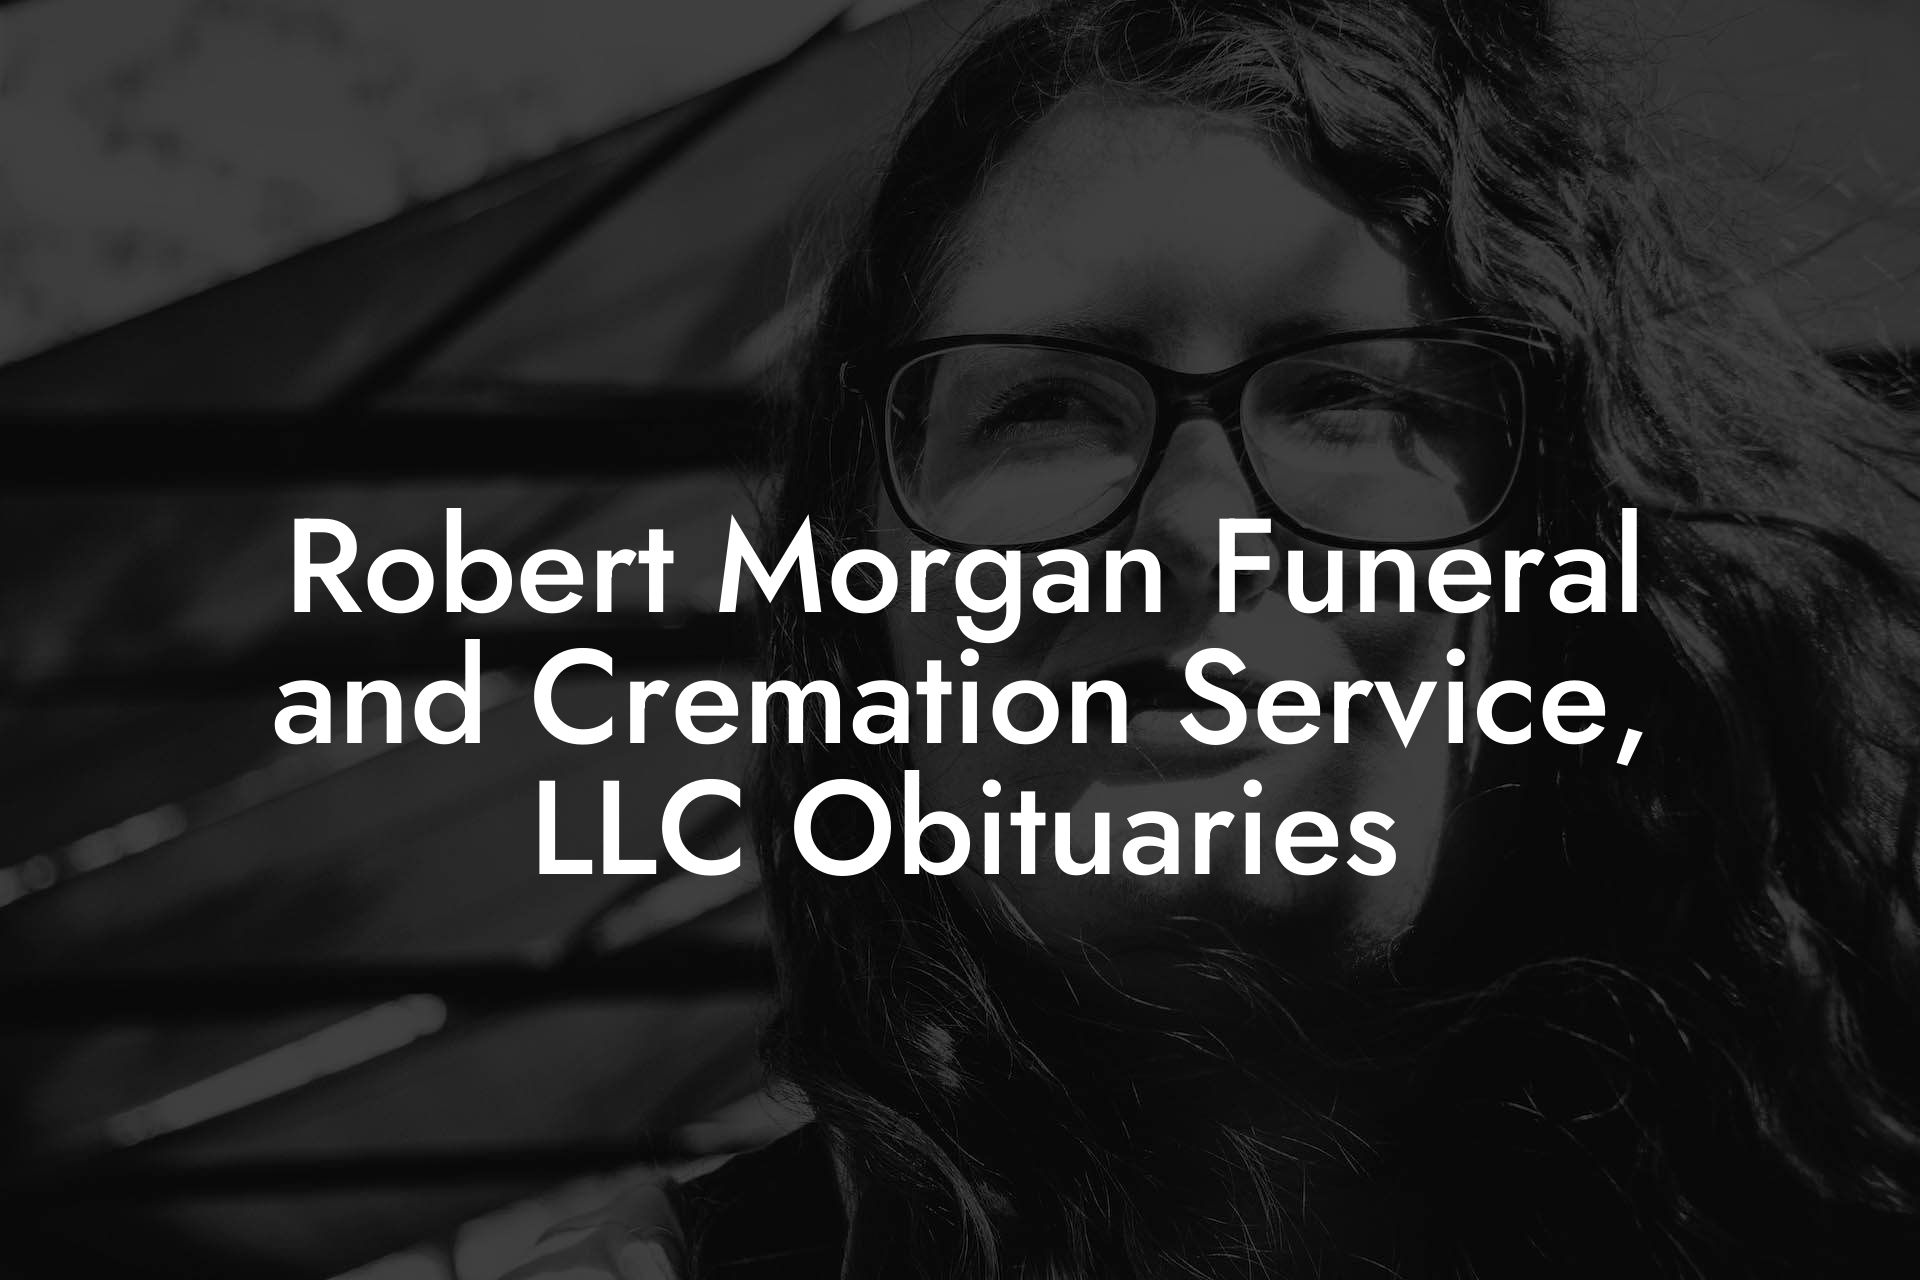 Robert Morgan Funeral and Cremation Service, LLC Obituaries